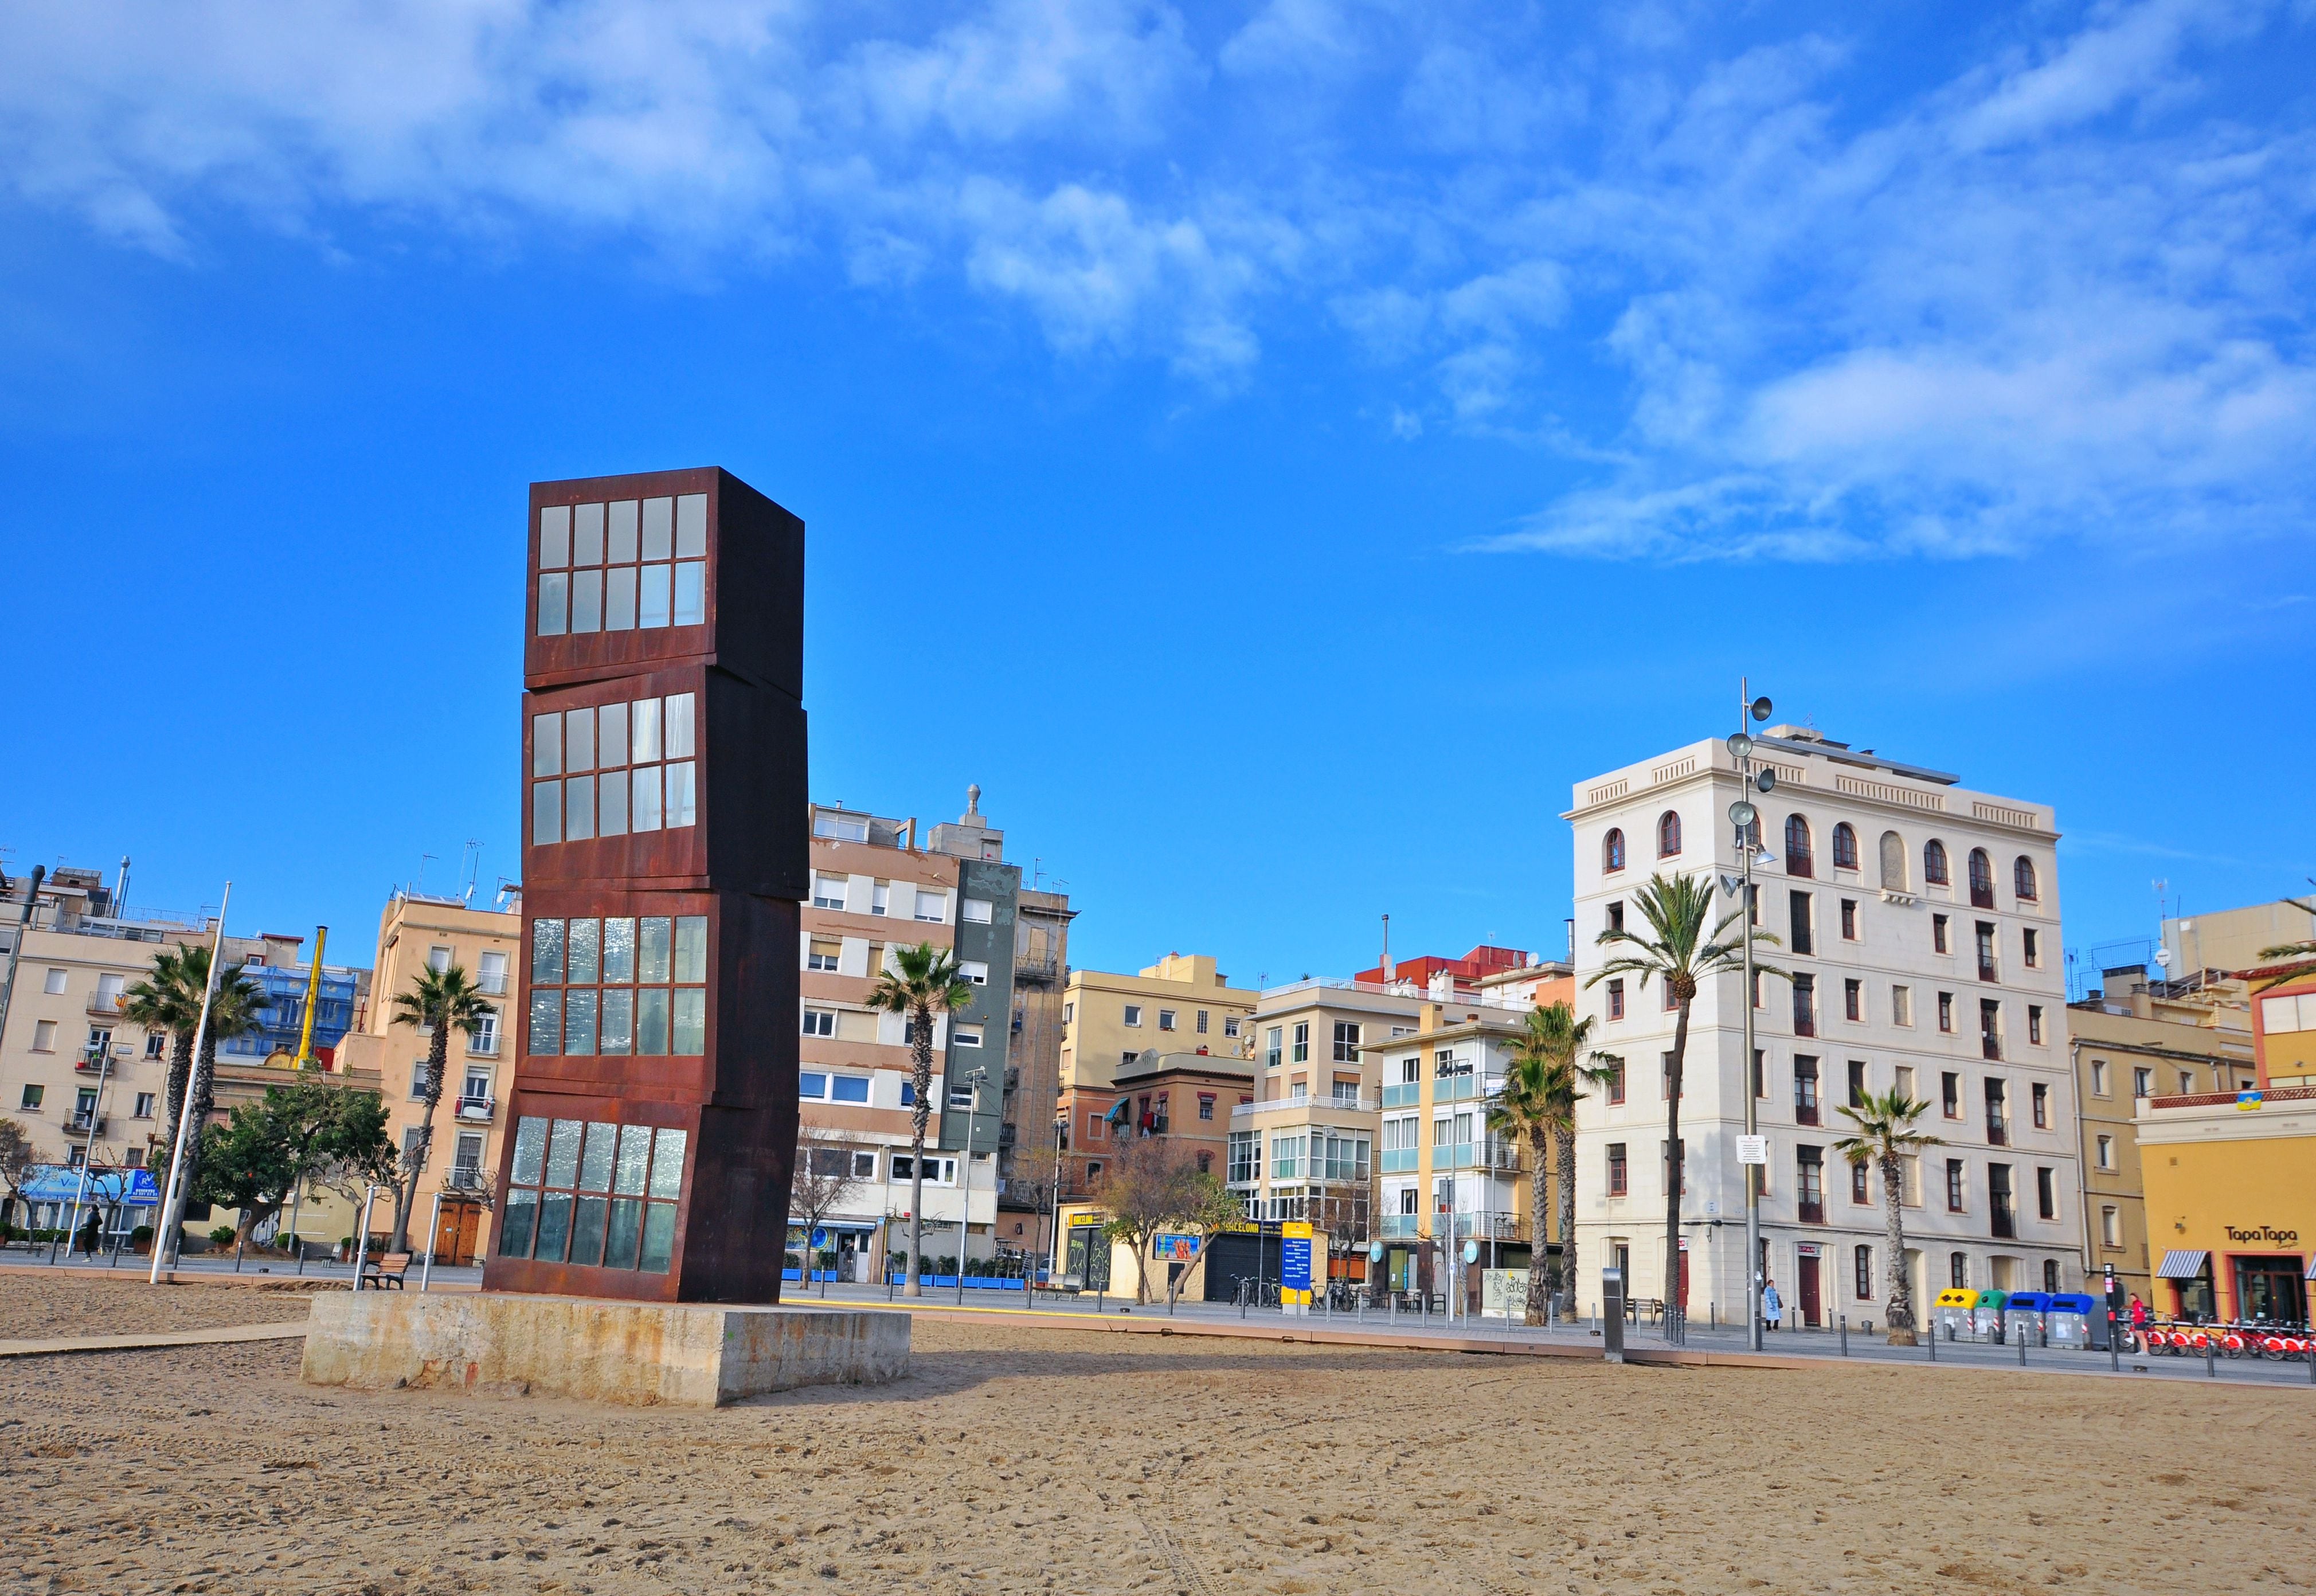 Escultura titulada L'Estel ferit (La estrella herida), de la alemana Rebecca Horn, situada en la playa de la Barceloneta. Al fondo, el barrio del mismo nombre.